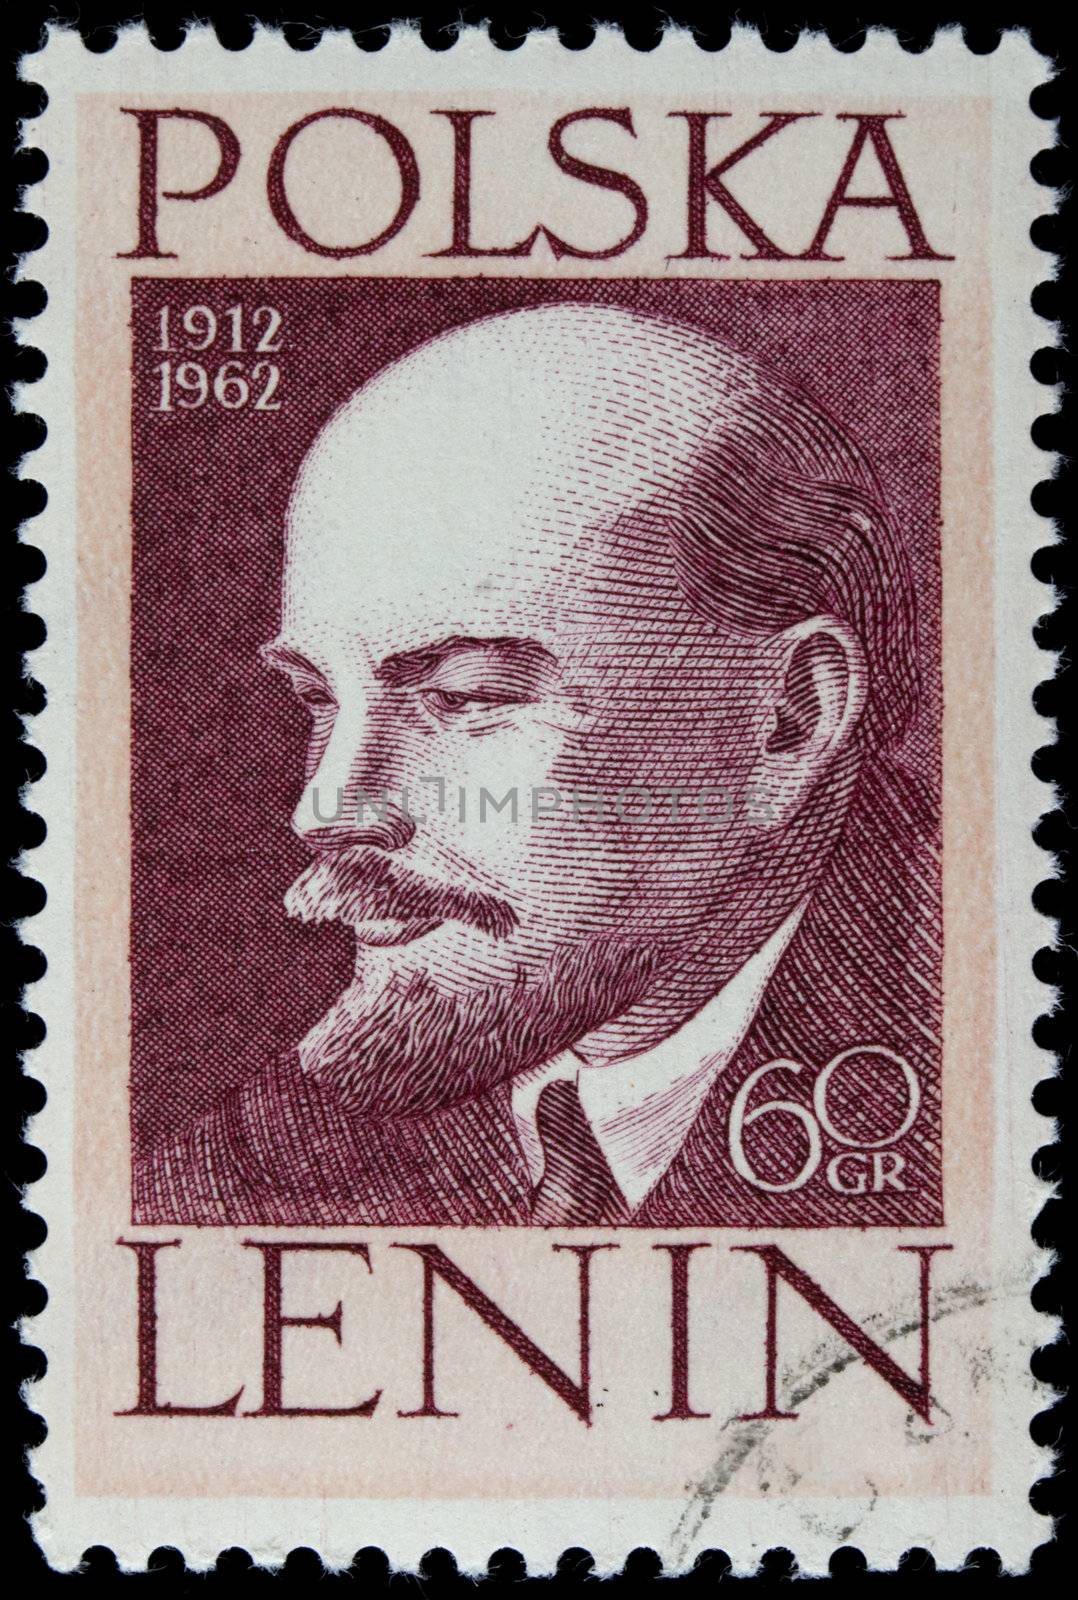 Lenin on a vintage post stamp by PixelsAway